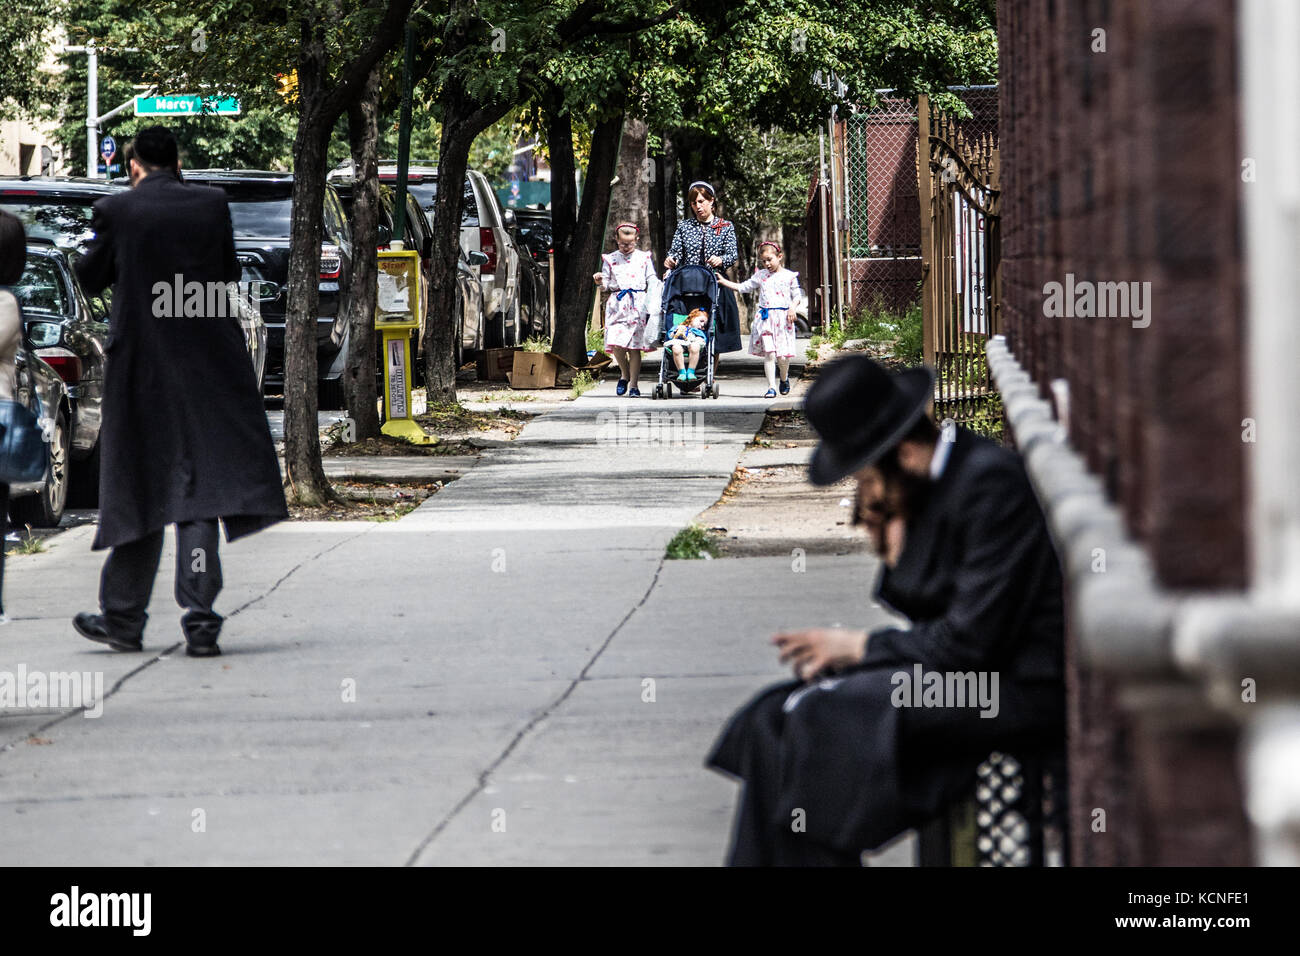 Les Juifs conservateurs surtout dans un quartier juif de Brooklyn, New York City, USA Banque D'Images